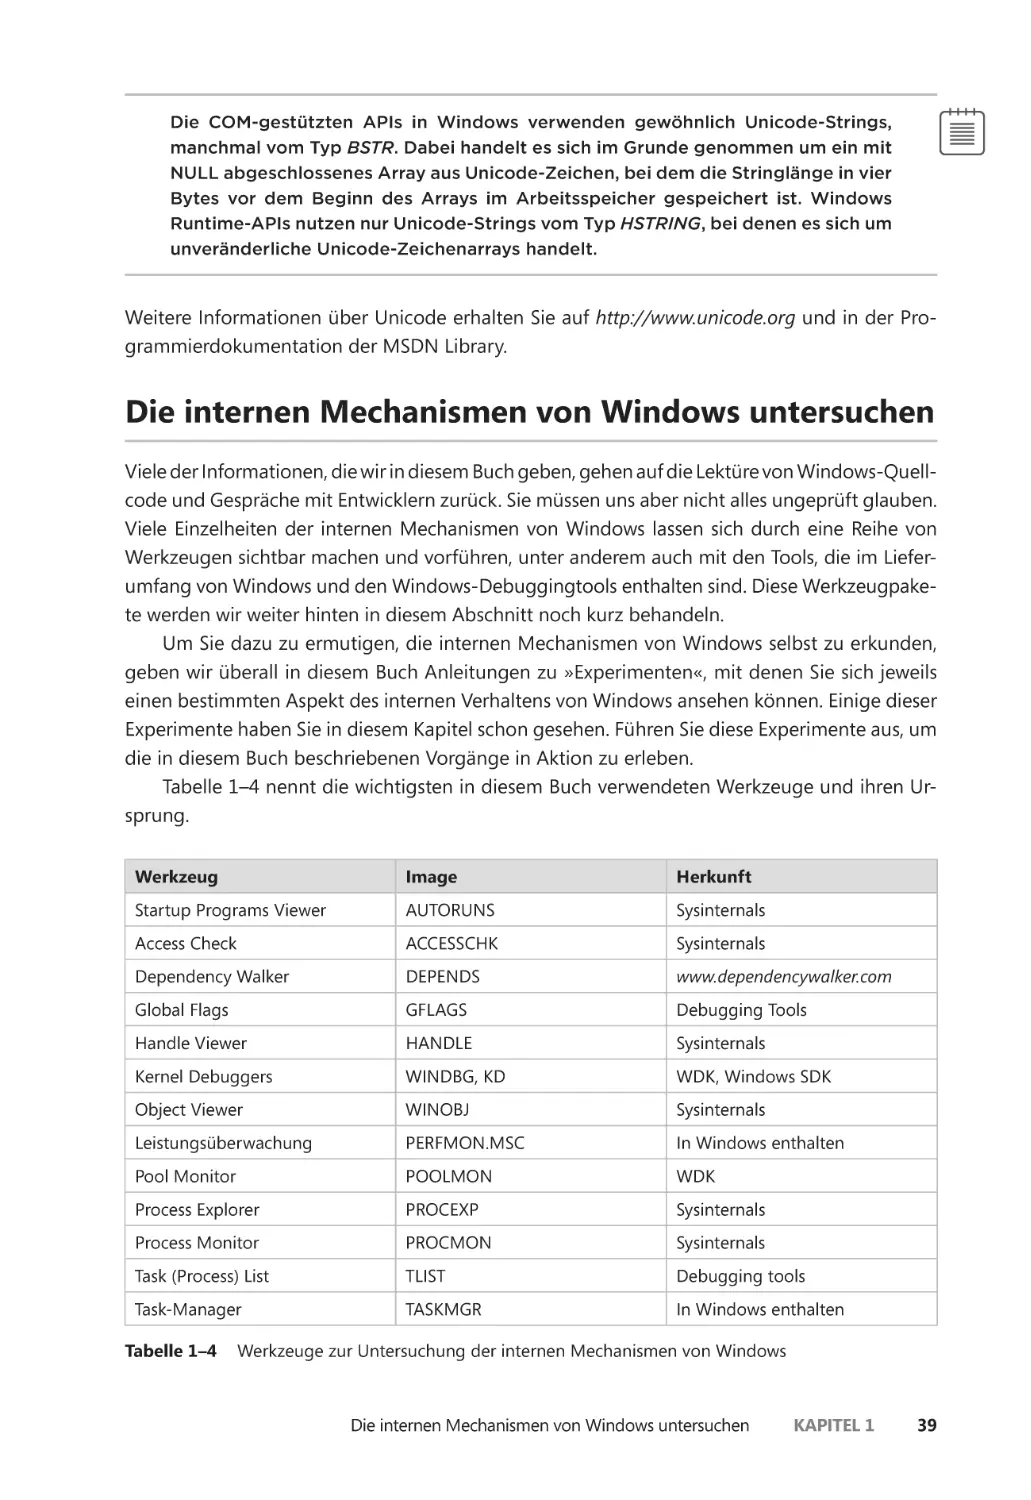 Die internen Mechanismen von Windows untersuchen